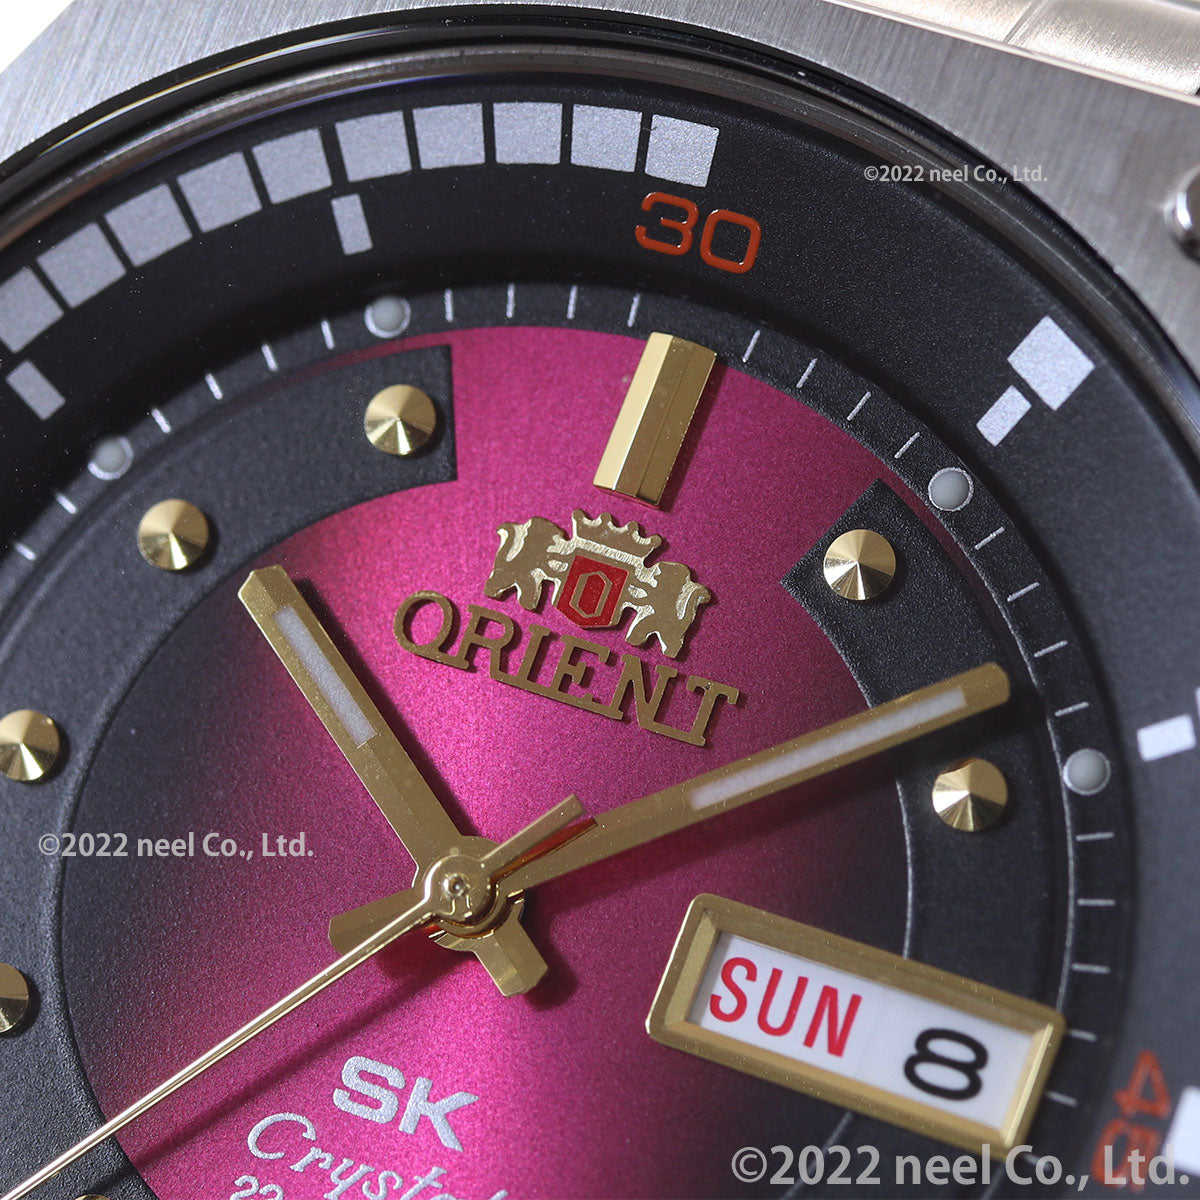 オリエント ORIENT SK 復刻モデル 腕時計 メンズ 自動巻き メカニカル リバイバル REVIVAL RN-AA0B02R